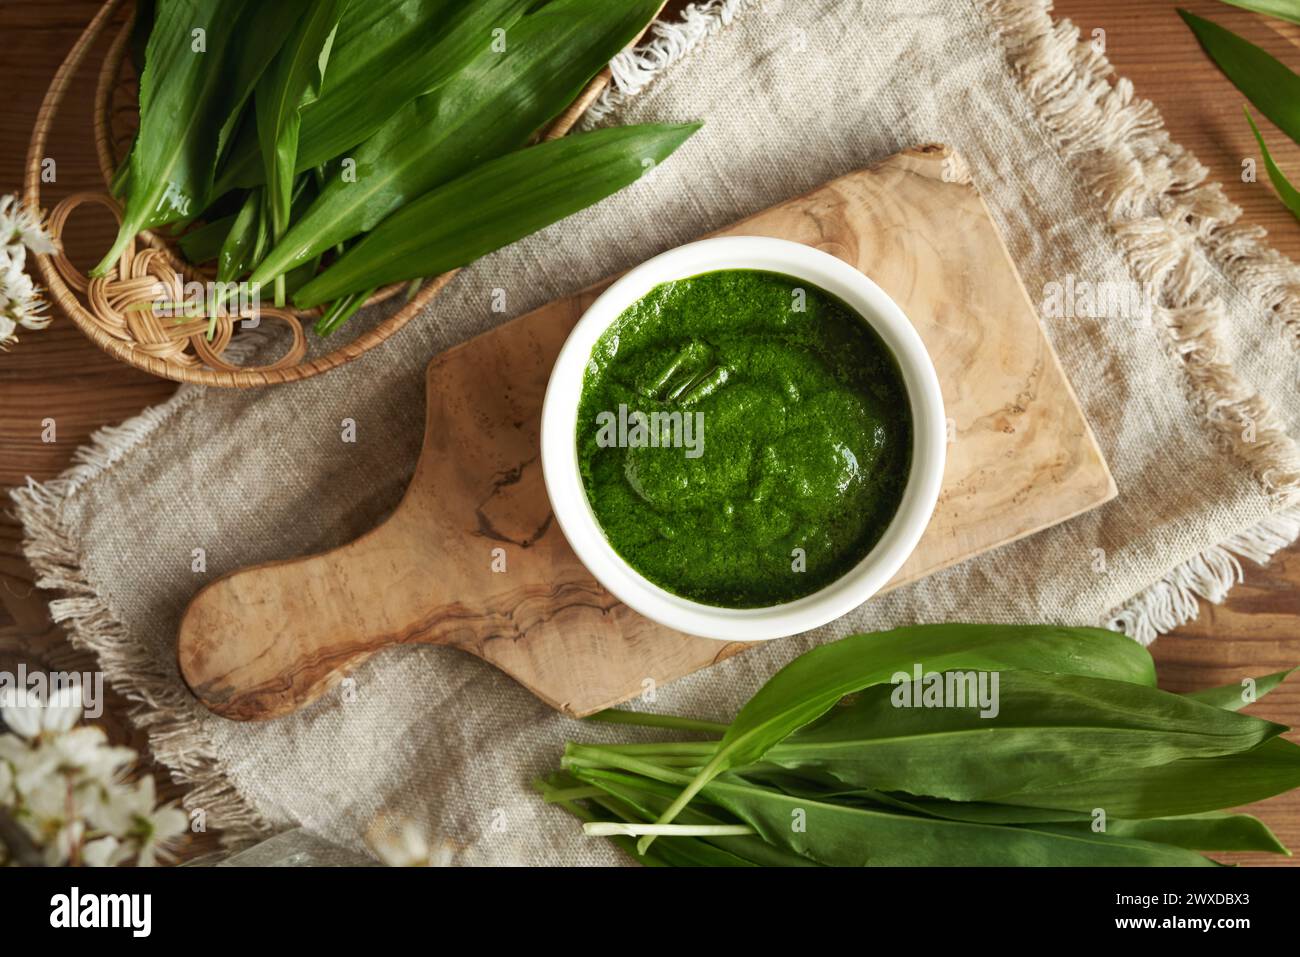 Salsa di pesto verde fatta in casa con aglio fresco o foglie di ramson dell'orso - pianta commestibile selvatica raccolta all'inizio della primavera Foto Stock